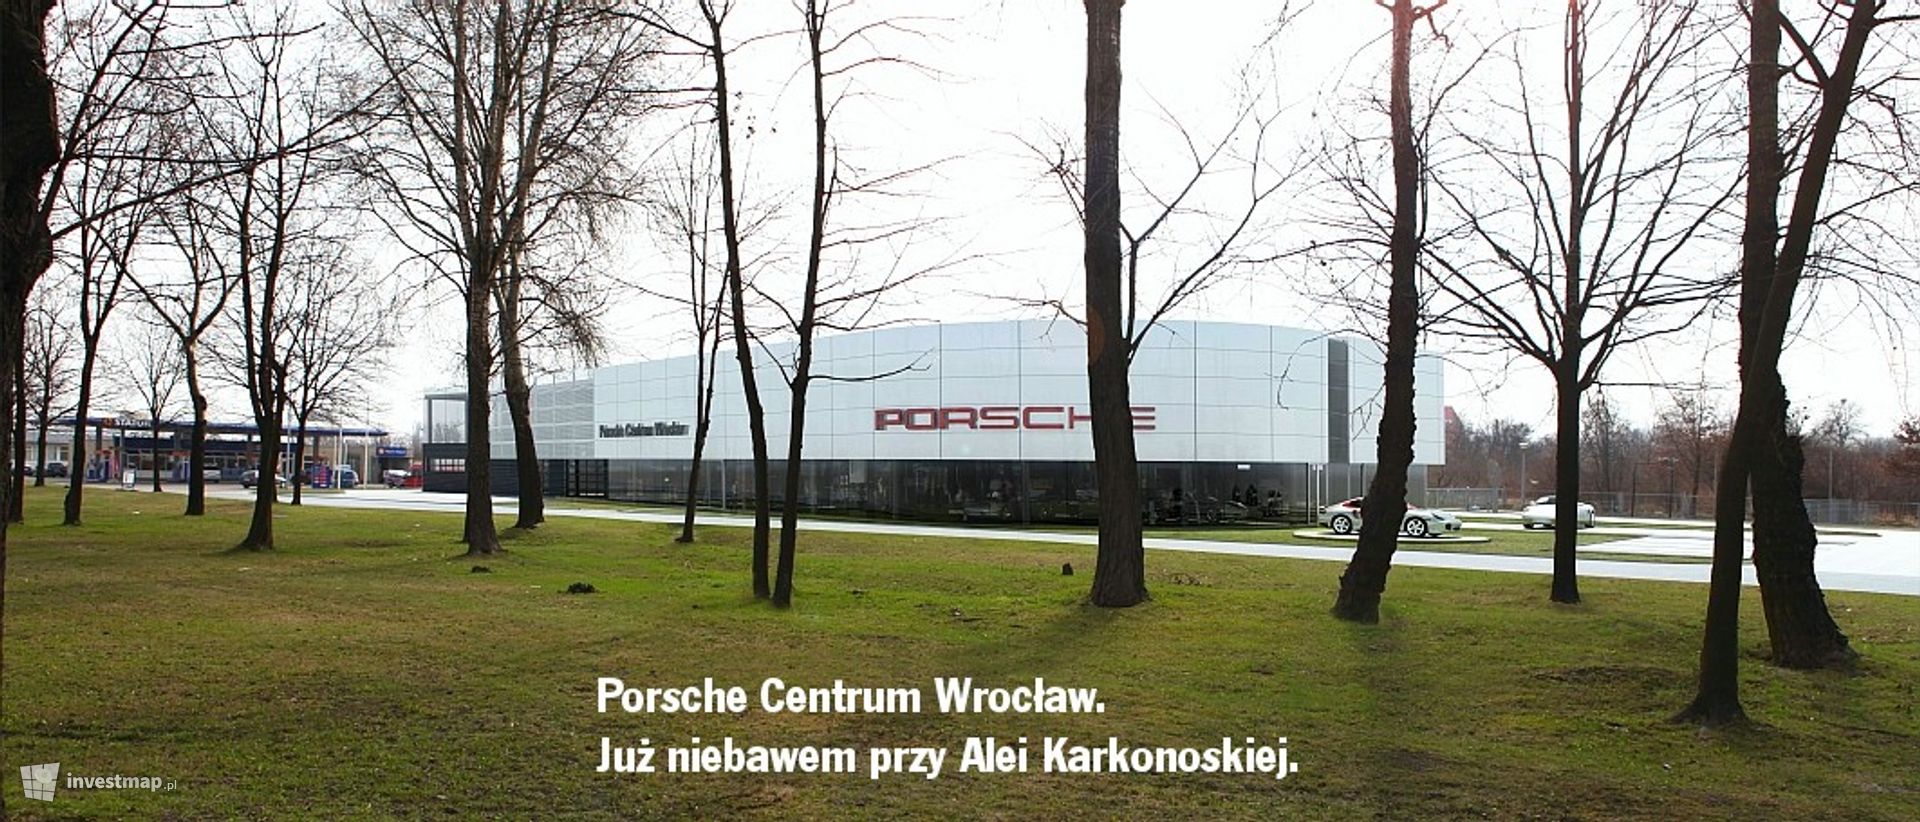 [Wrocław] Salon samochodowy "Porsche Centrum Wrocław"